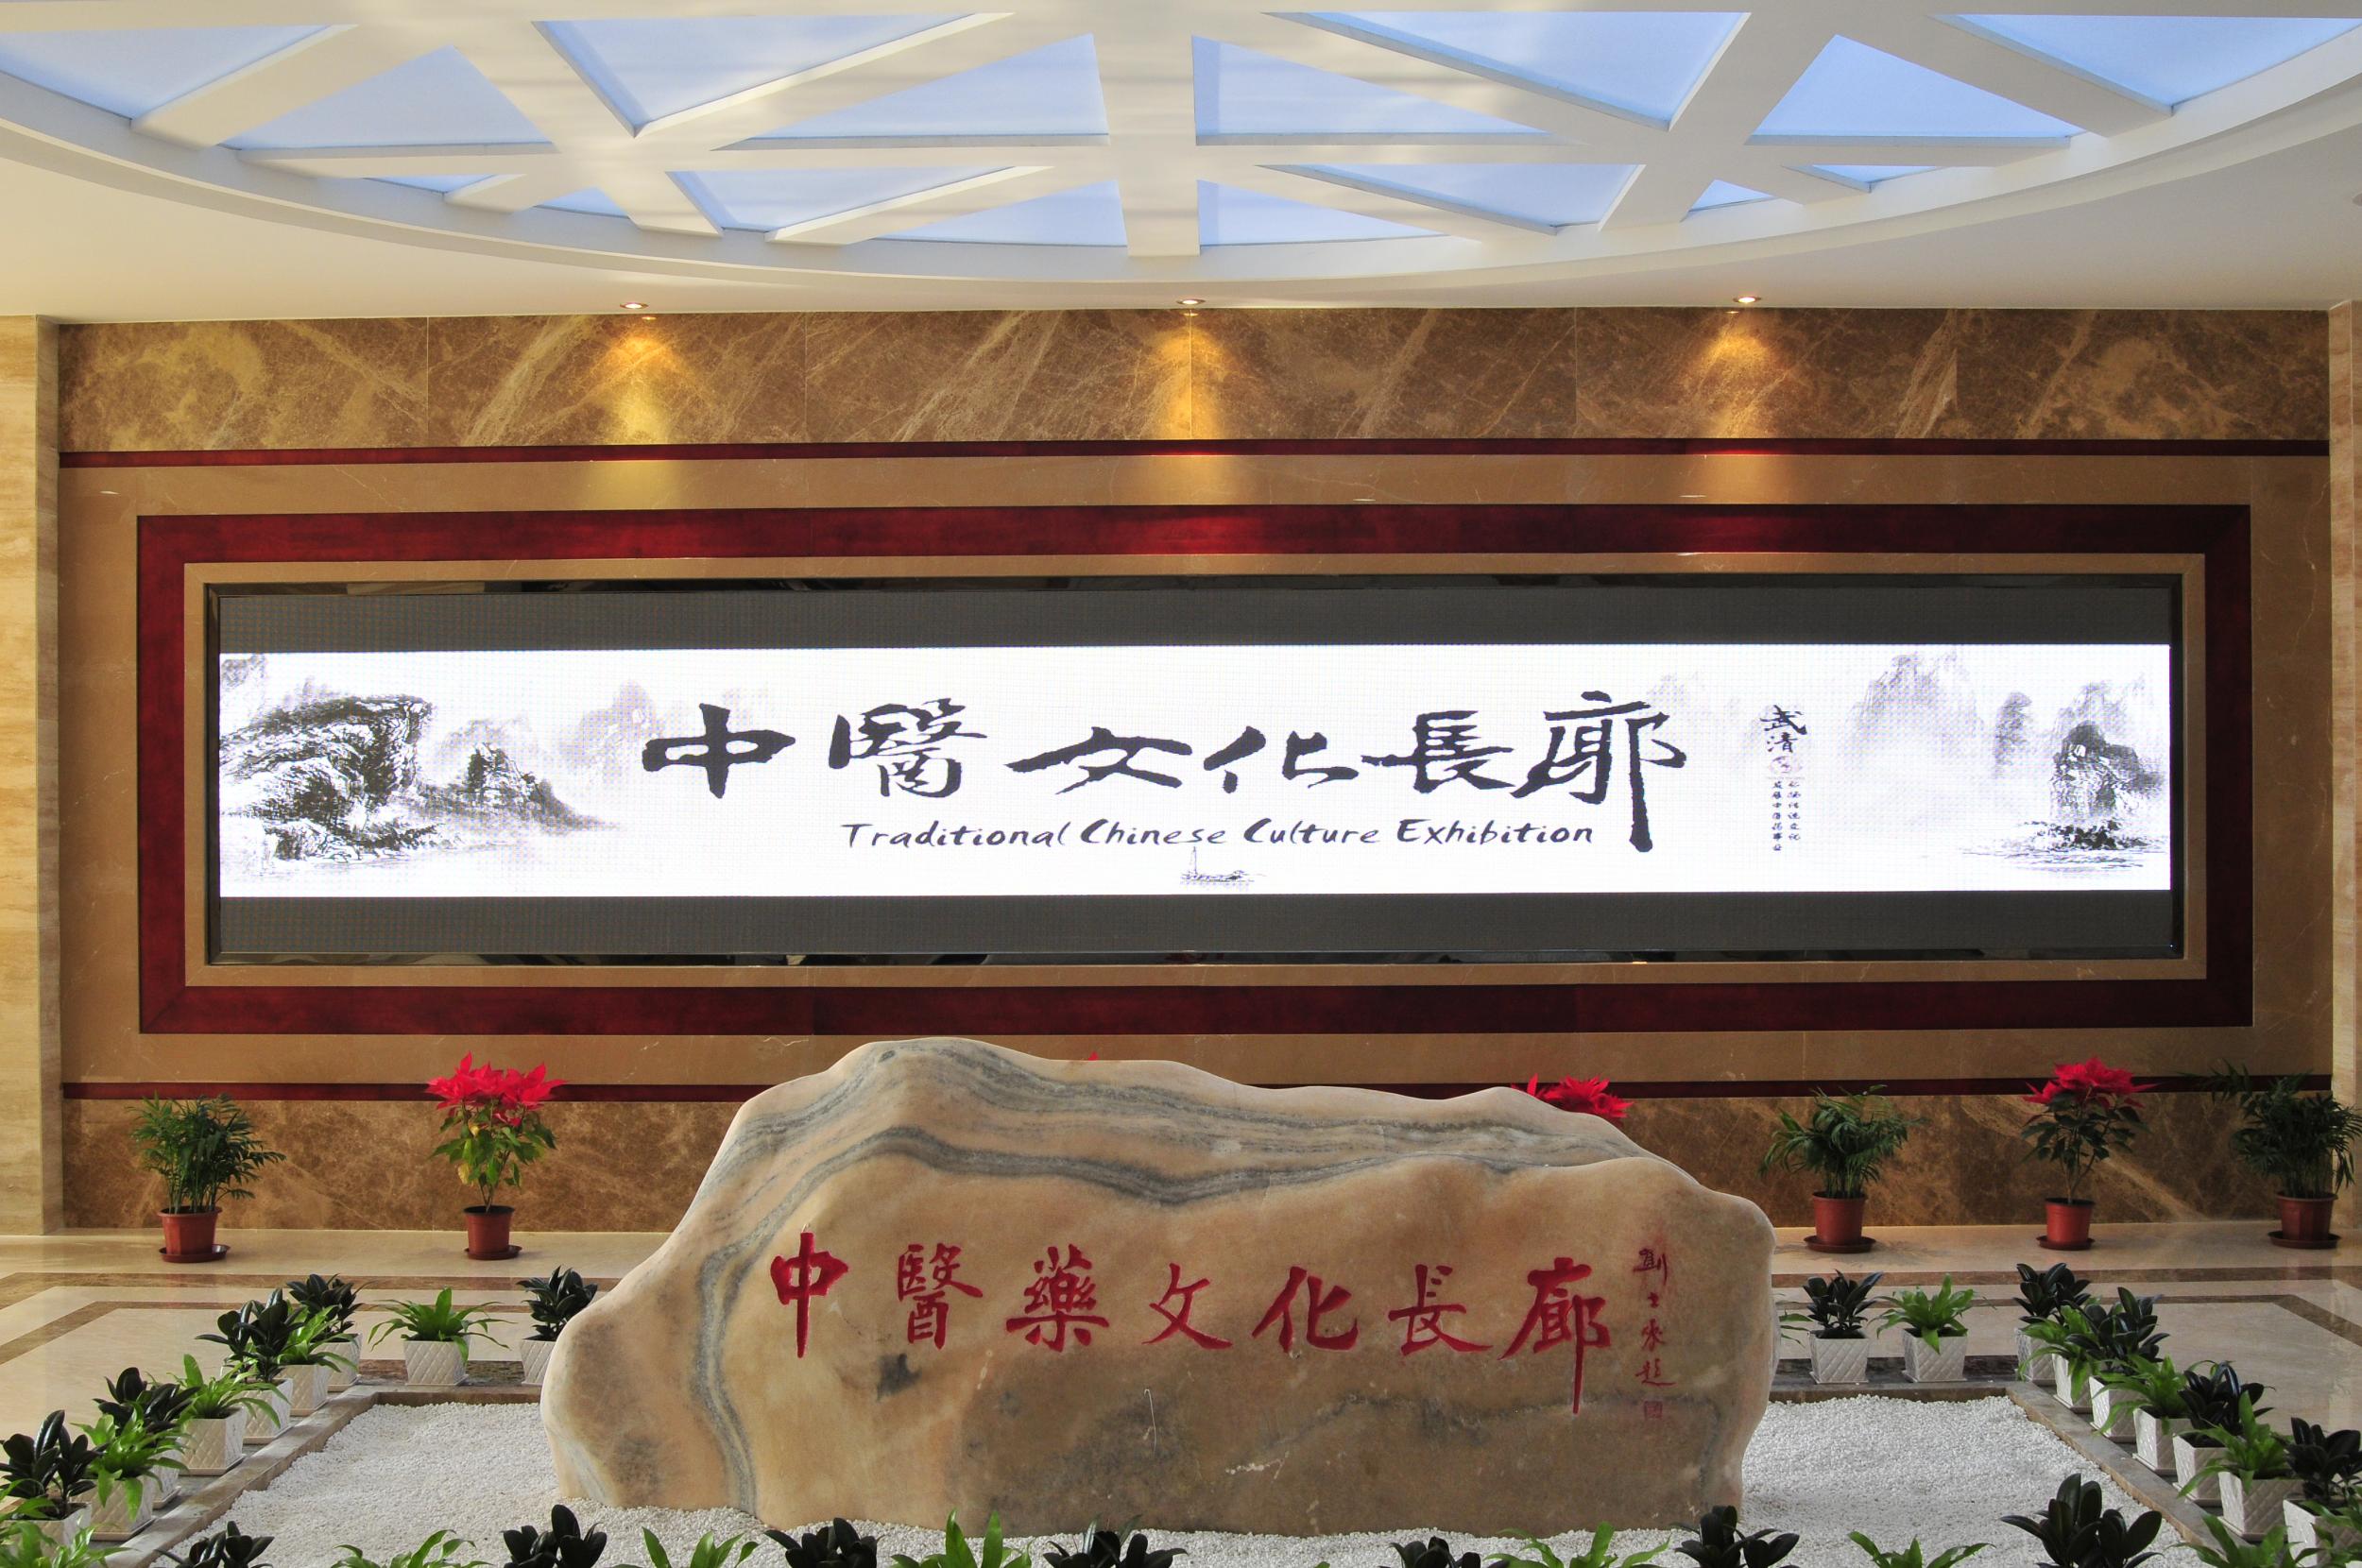 中医药文化长廊-入口处